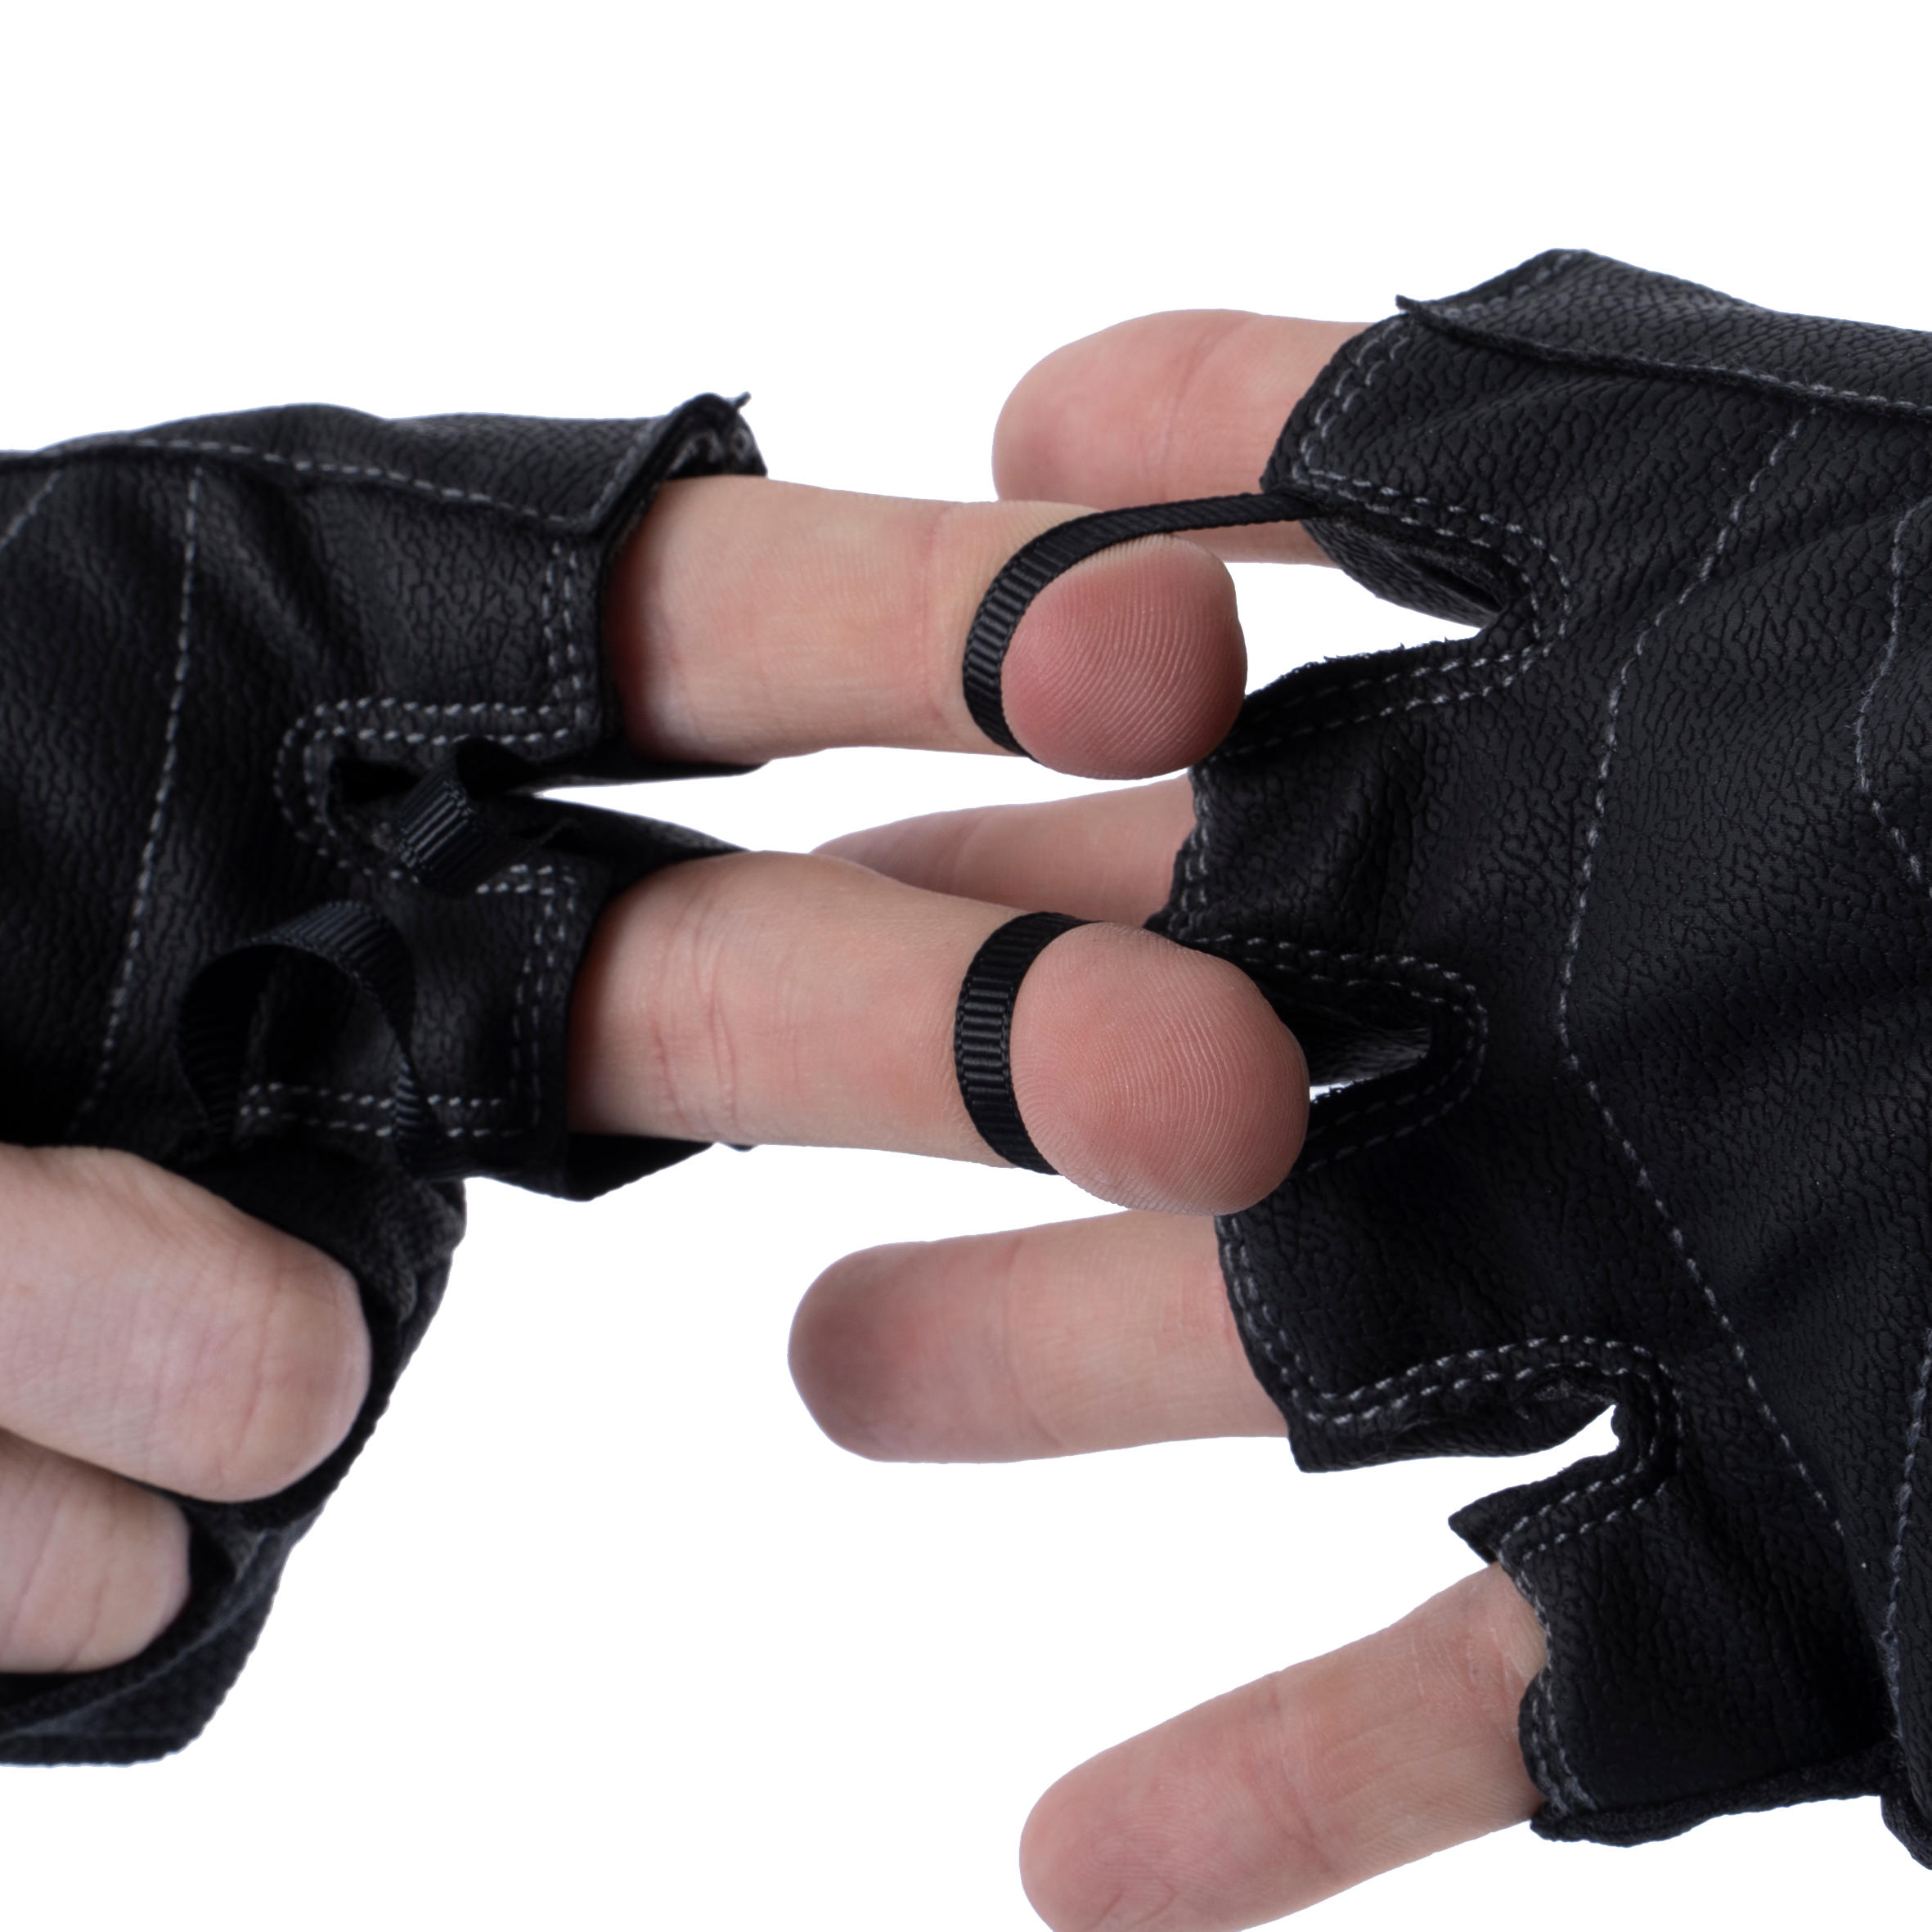 100 Weight Training Gloves - Black/Grey 4/8